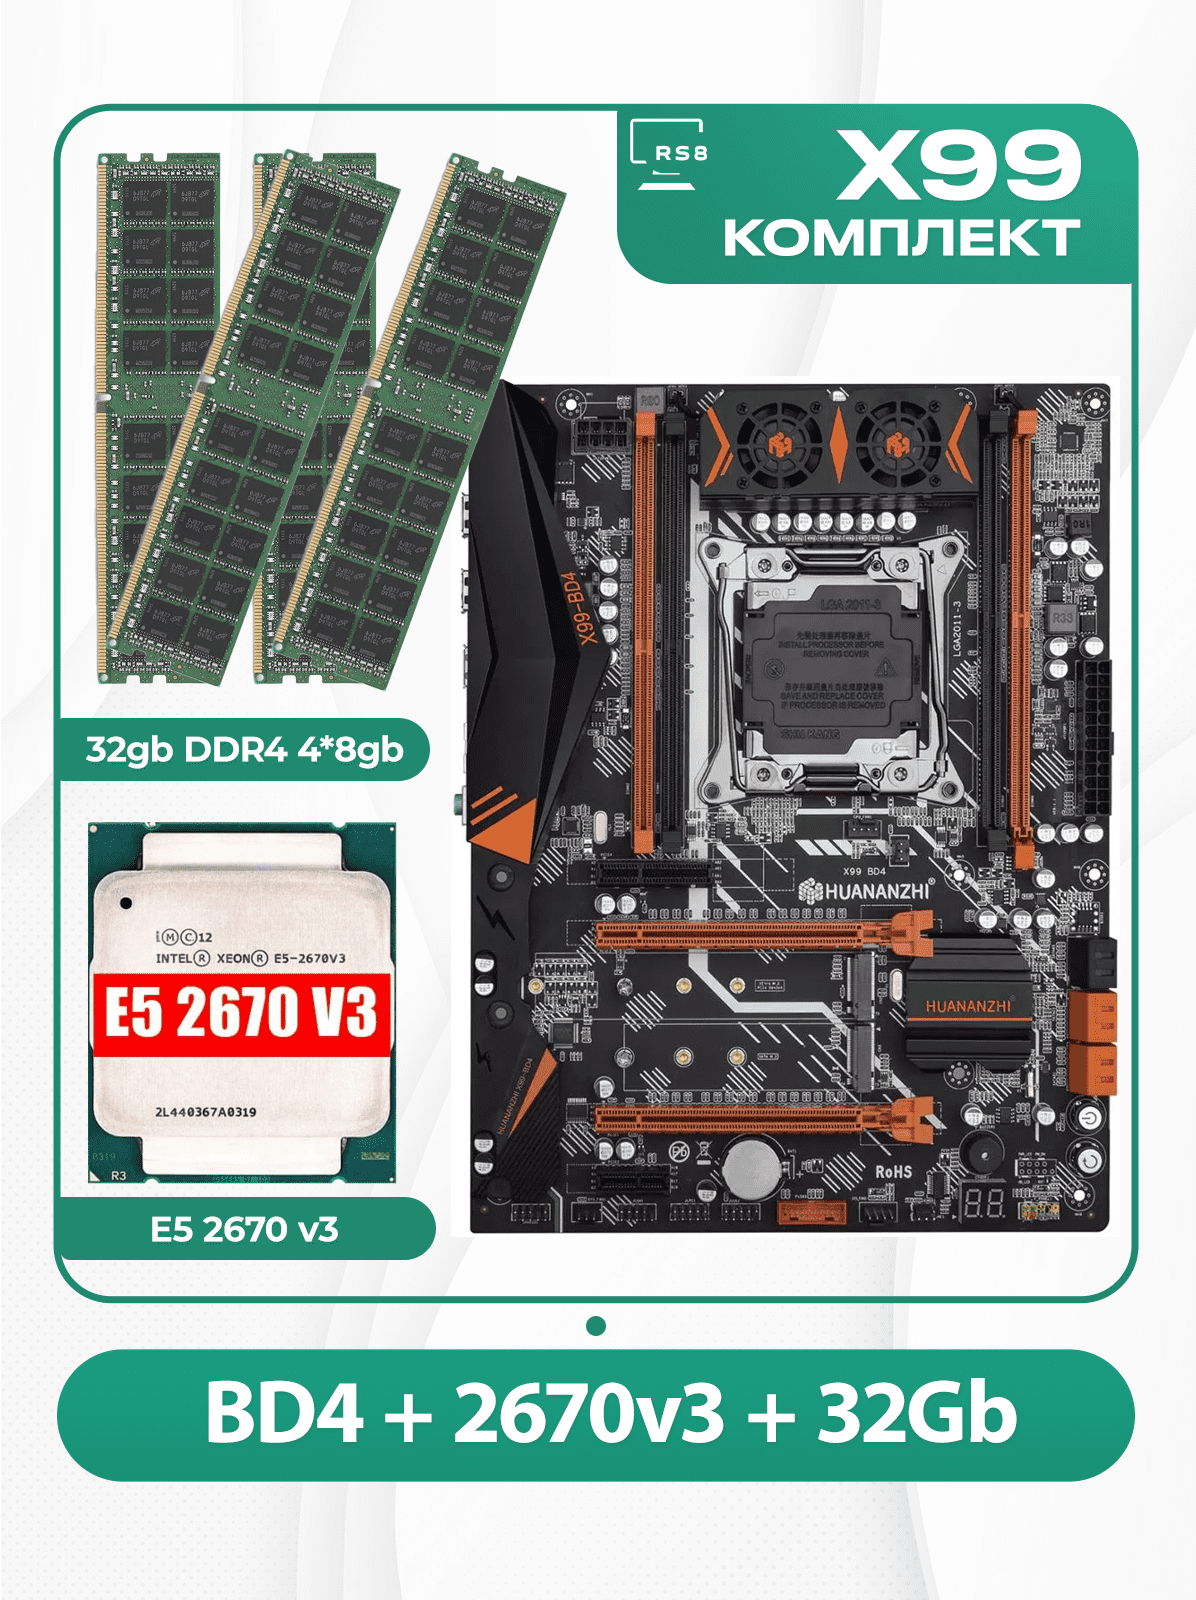 Комплект материнской платы X99: Huananzhi BD4 2011v3 + Xeon E5 2670v3 + DDR4 32Гб 4х8Гб